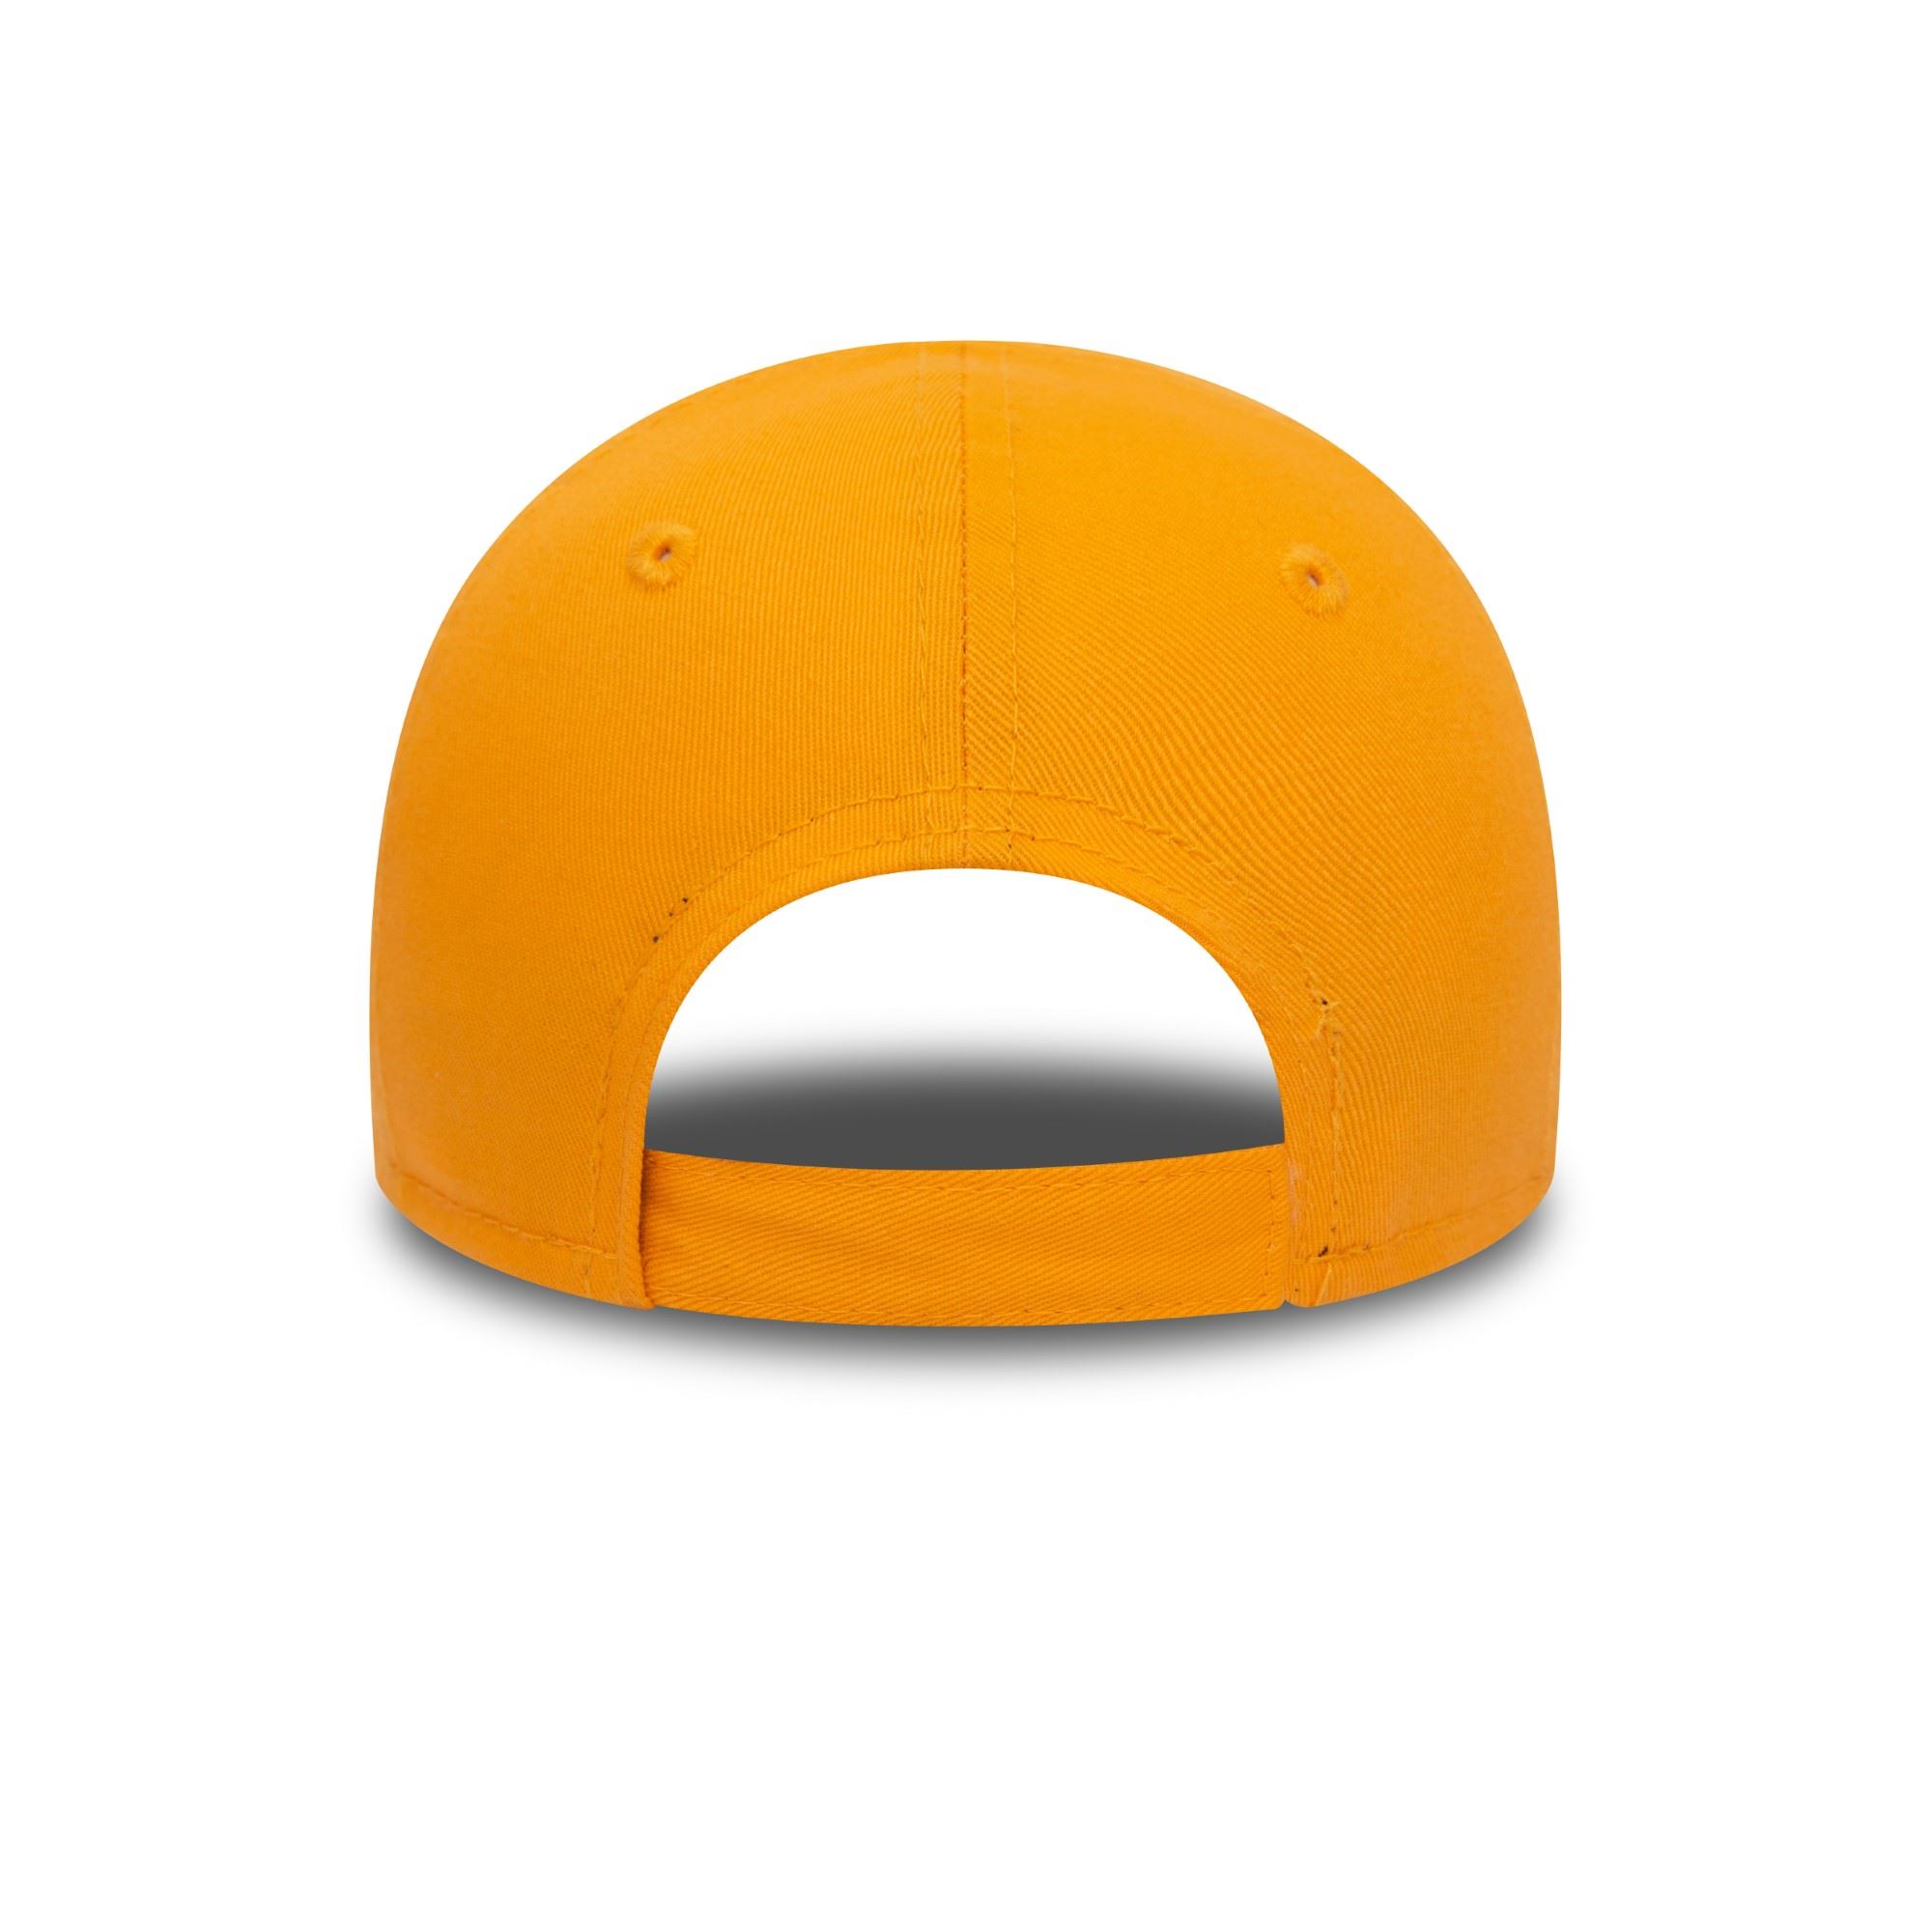 New York Yankees MLB League Essential Orange 9Forty Cap für Kleinkinder New Era